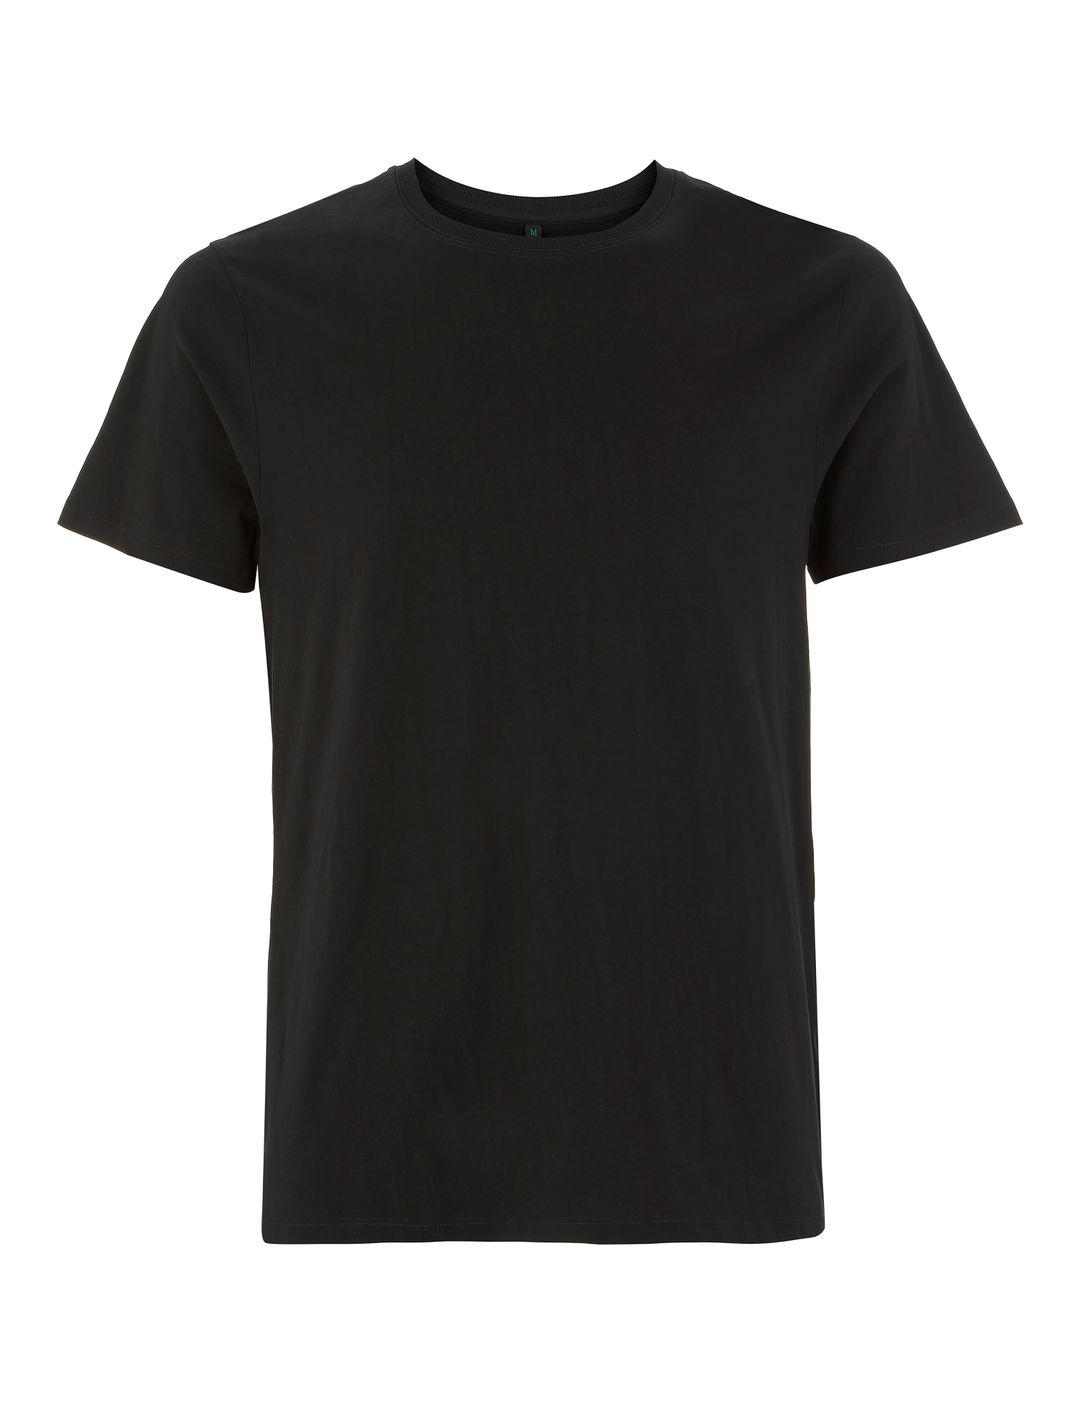 Czarny ekologiczny t-shirt unisex z własnym nadrukiem firmowym Continental Jersey t-shirt EP18